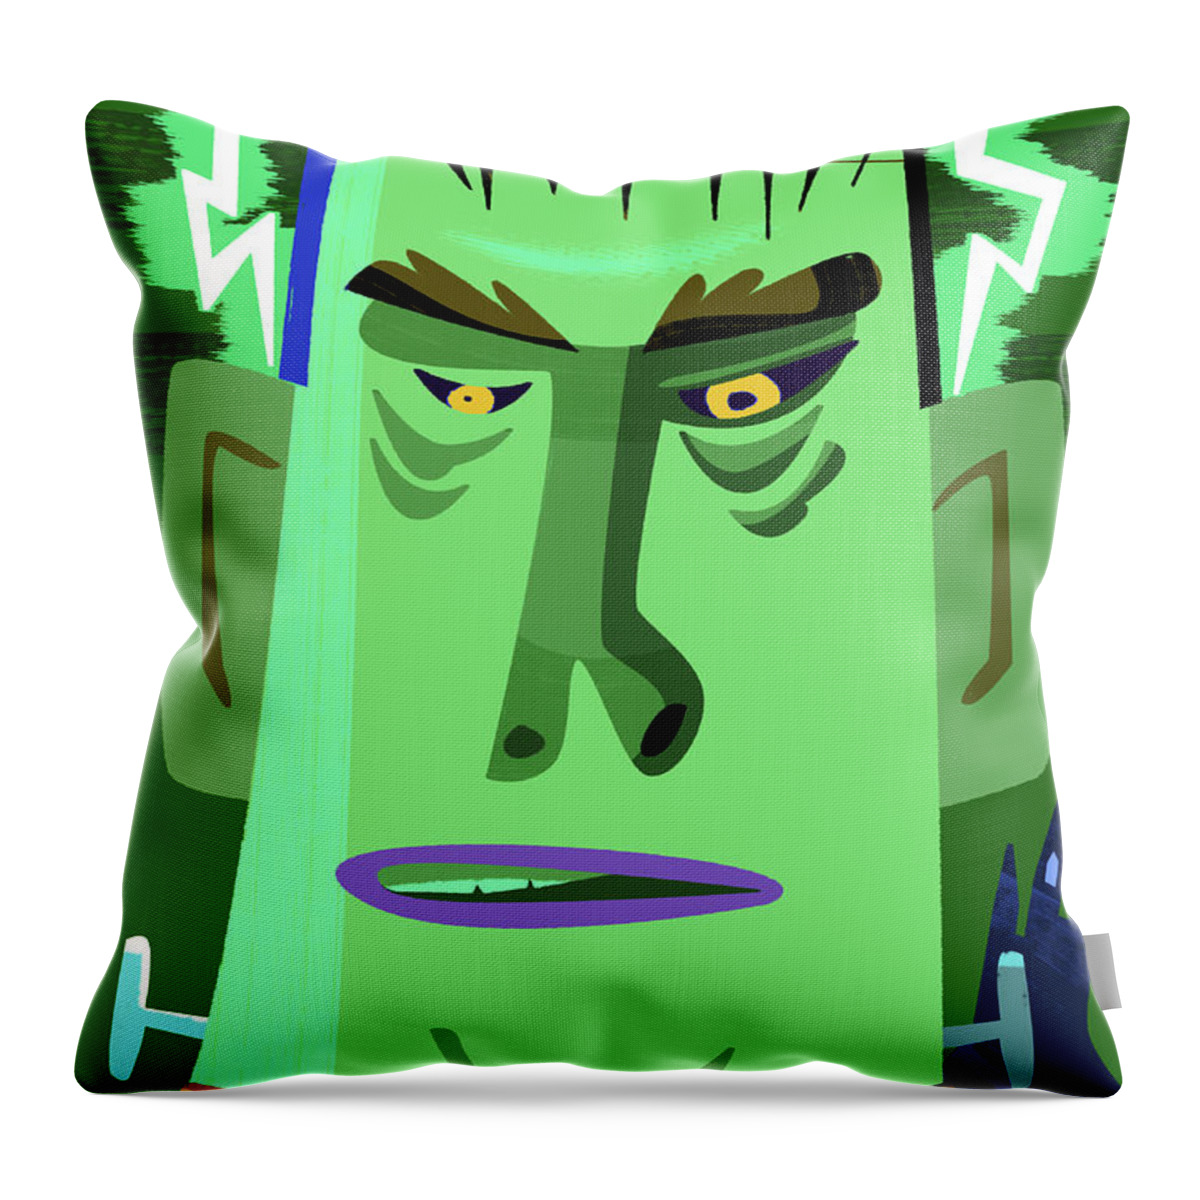 Frankenstein Throw Pillow featuring the digital art Frankenstein by Alan Bodner